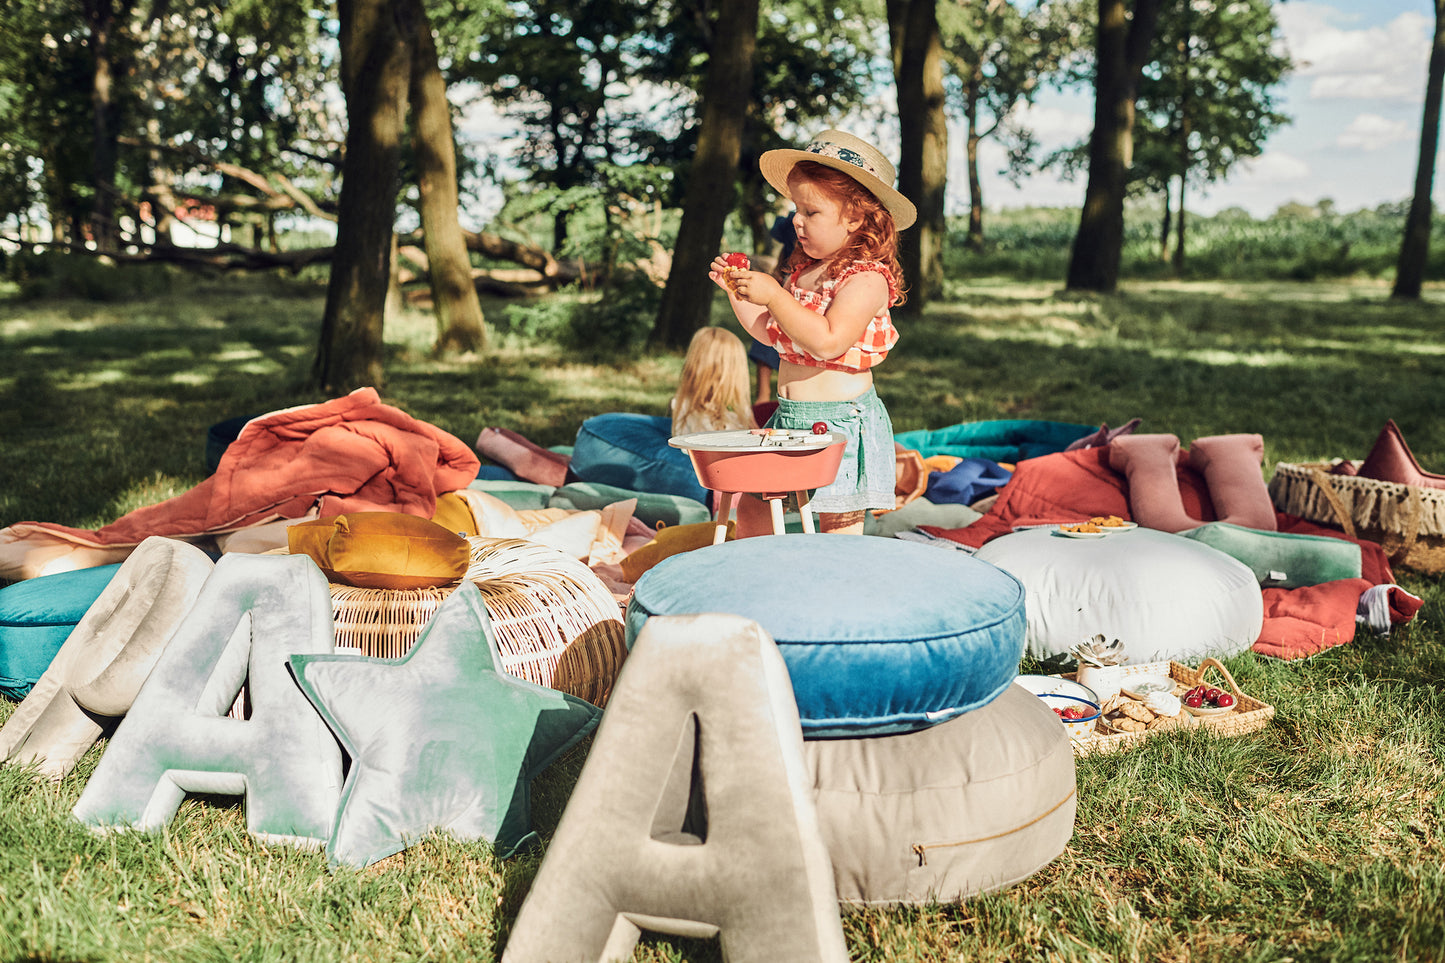 piknik dziecięcy w parku z poduszkami literkami welurowymi od Bettys Home. Obok dziecka są duże pufy welurowe